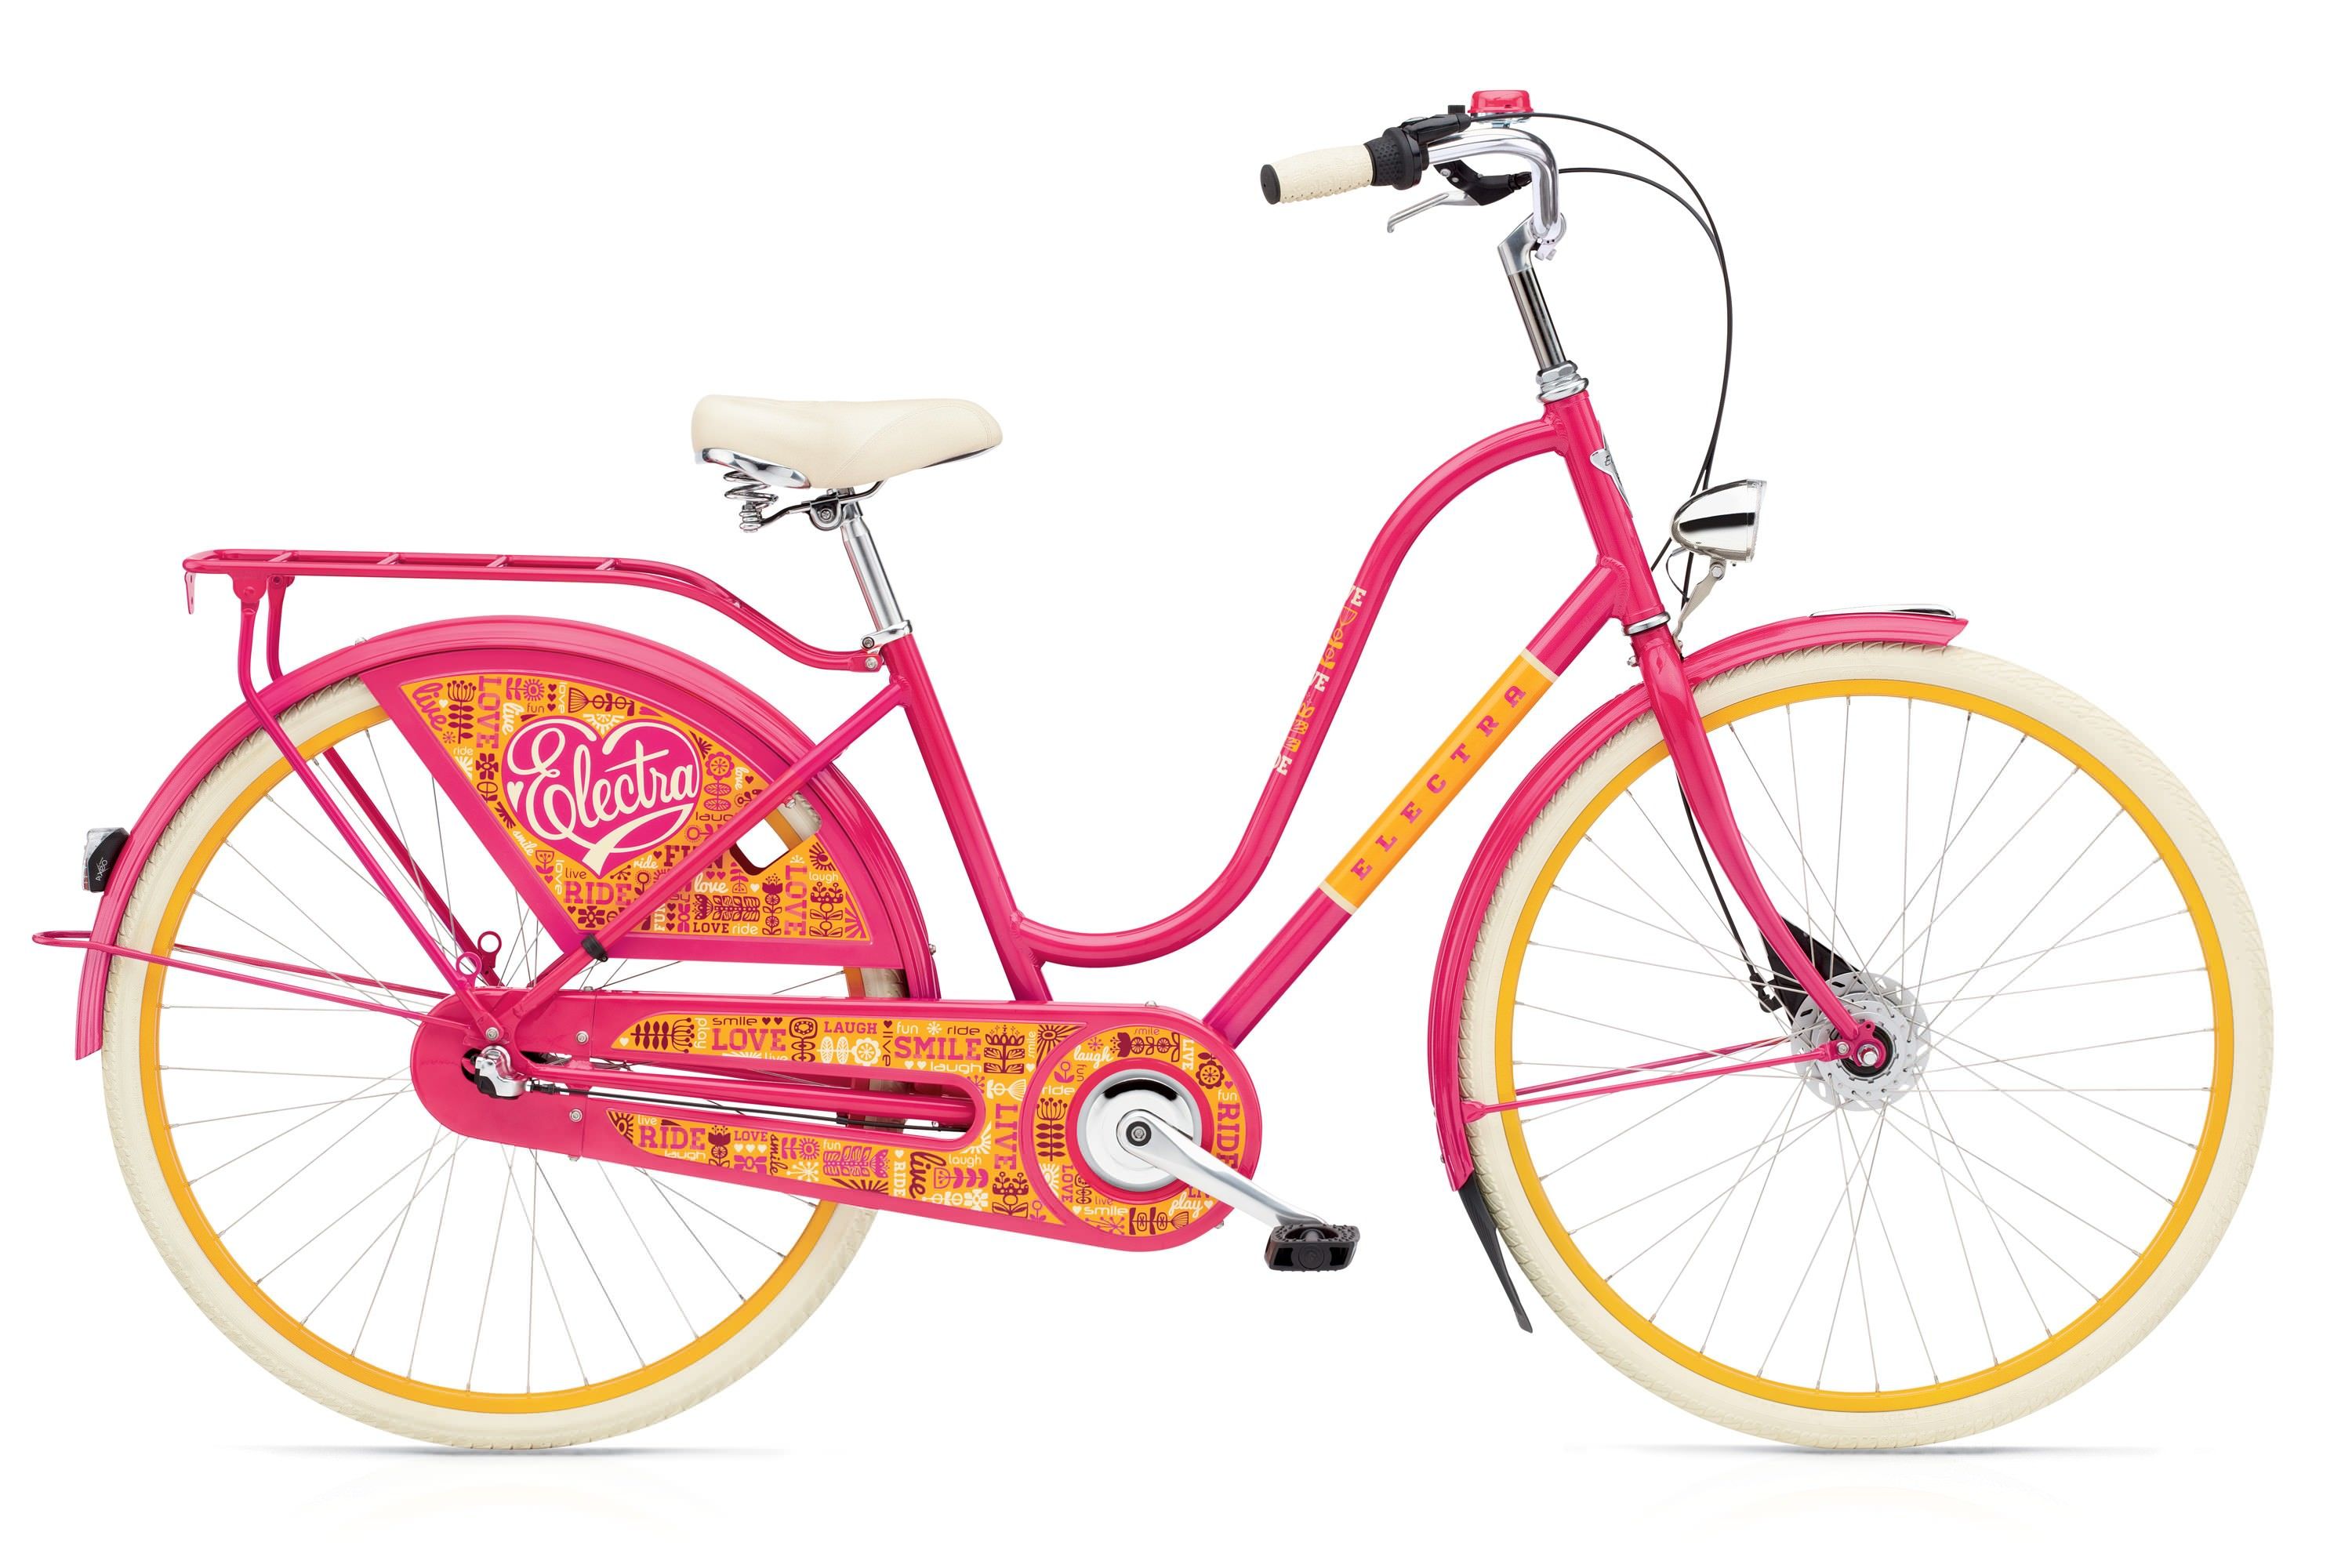  Велосипед трехколесный детский велосипед Electra Amsterdam Fashion 7i Ladies 2017